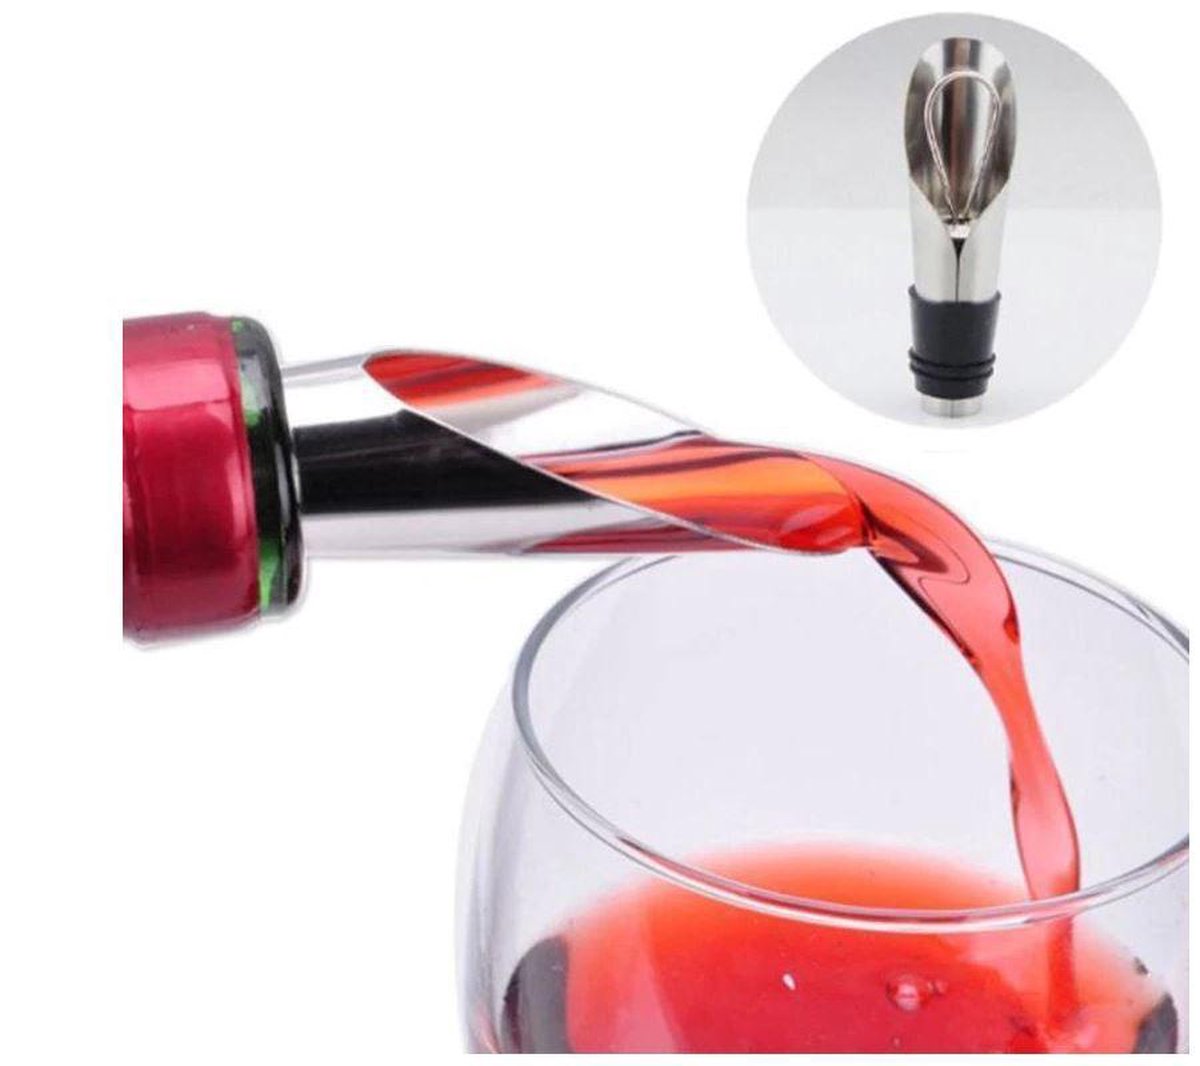 Bec verseur et décanteur Bec verseur avec base OUNONA Aérateur de vin en acier inoxydable 